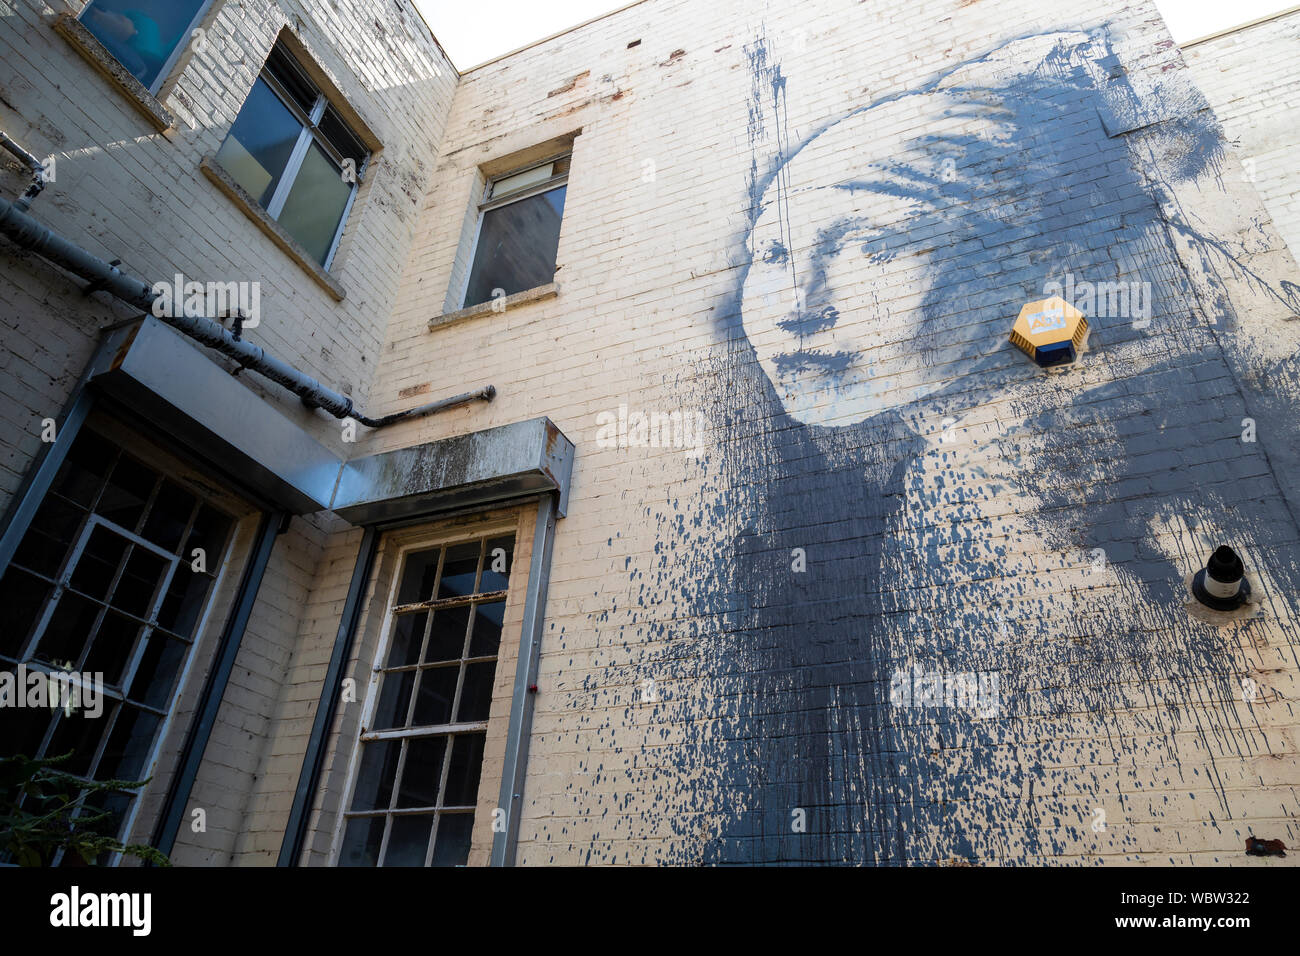 Une murale de Bansky, 'La fille avec le tympan percé' sur un bâtiment à Bristol, Angleterre Banque D'Images